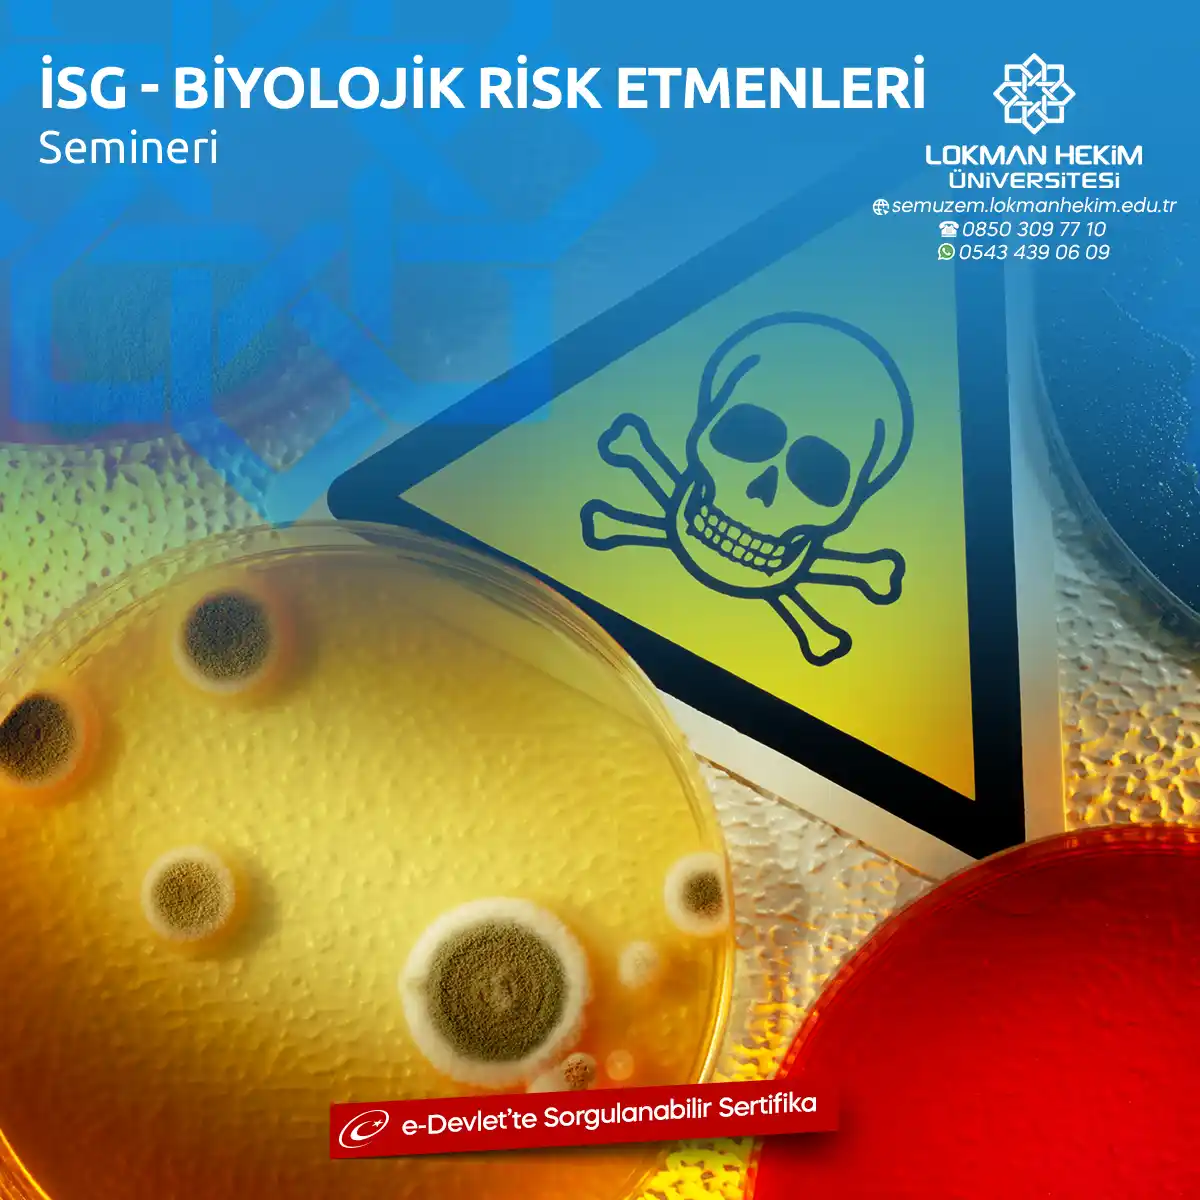 İSG - Biyolojik Risk Etmenleri Semineri